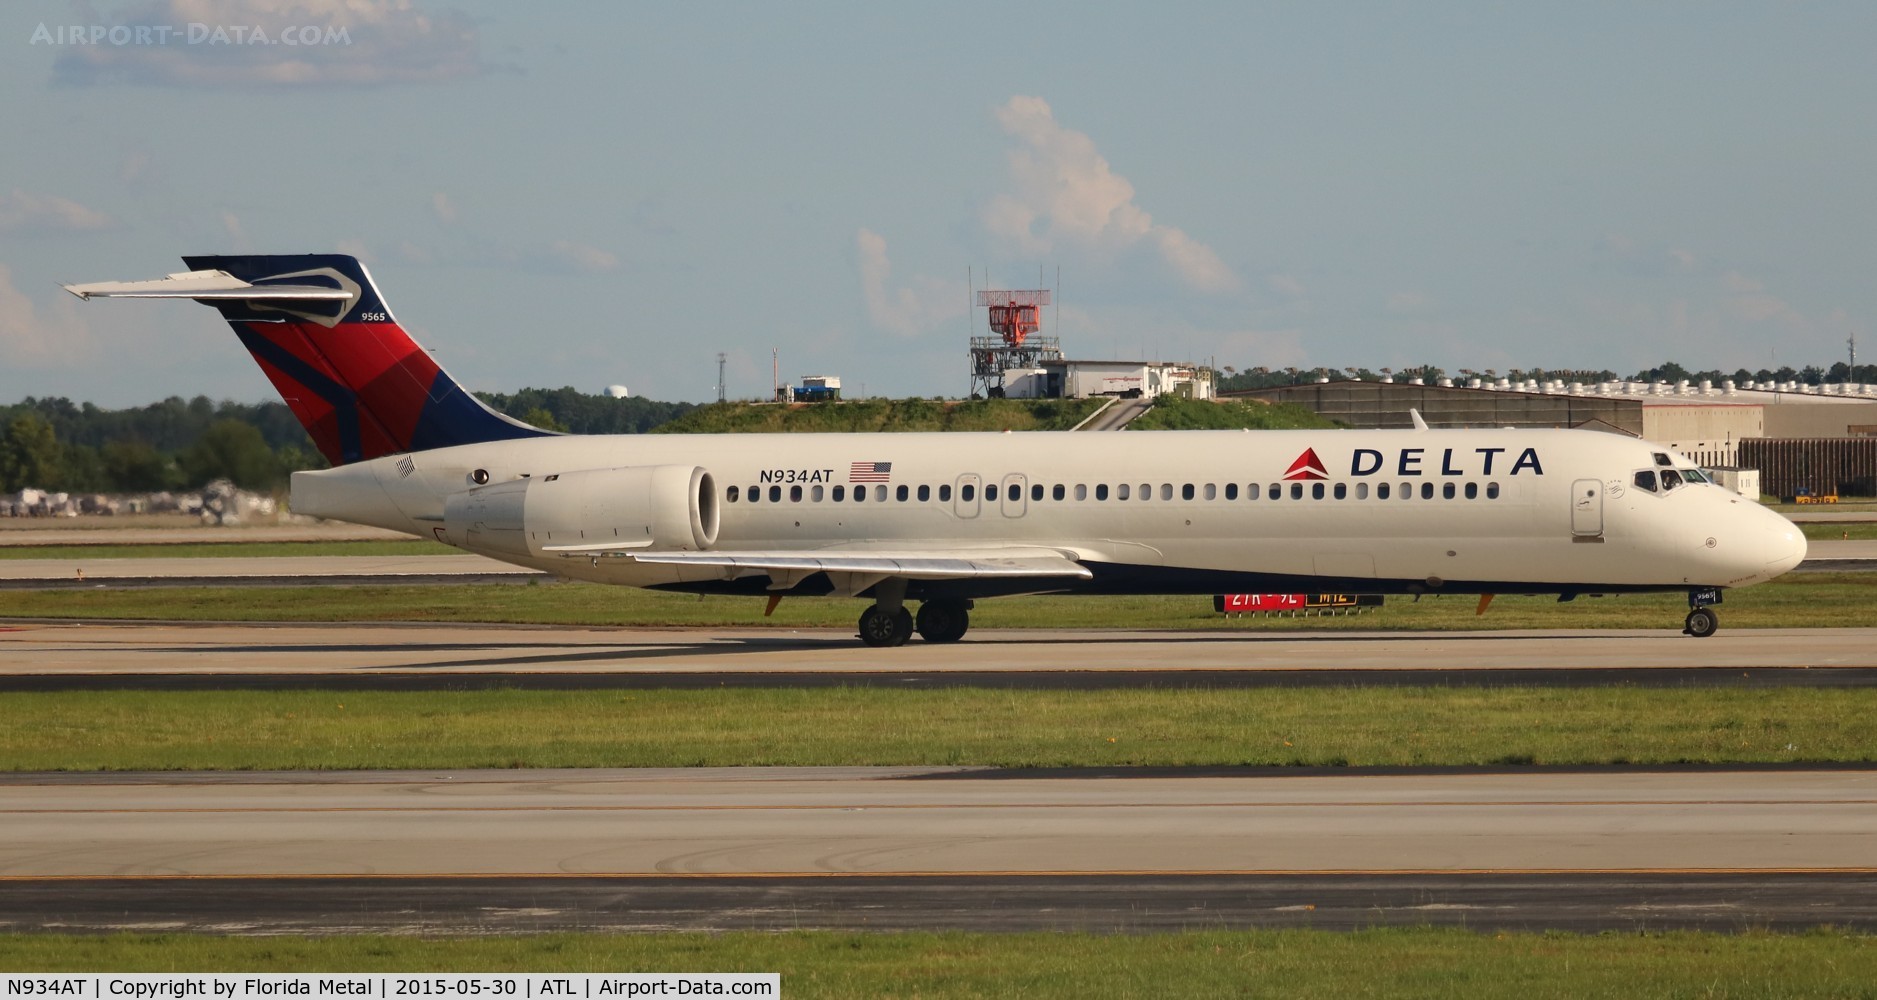 N934AT, 2000 Boeing 717-200 C/N 55070, Delta